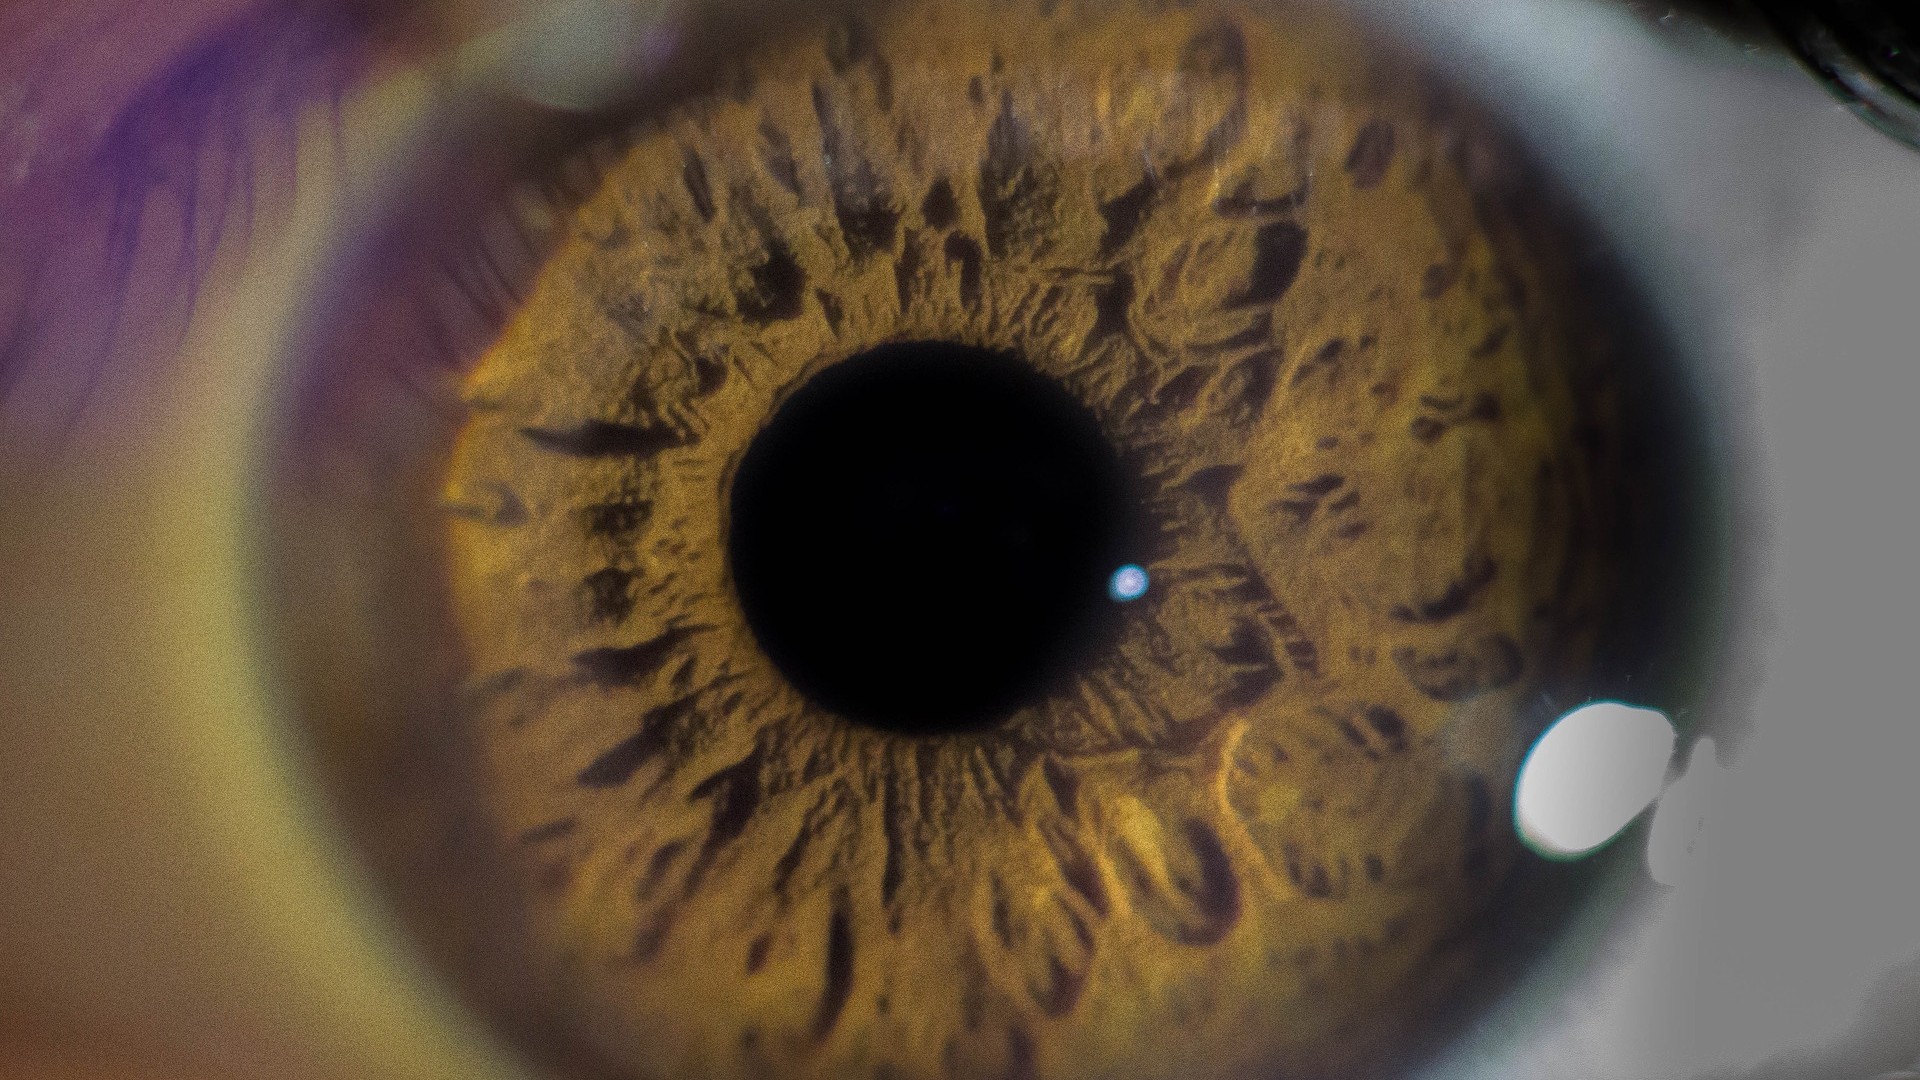 Foto de capa do artigo "Glaucoma: tem cura? Quais são os colírios utilizados?"